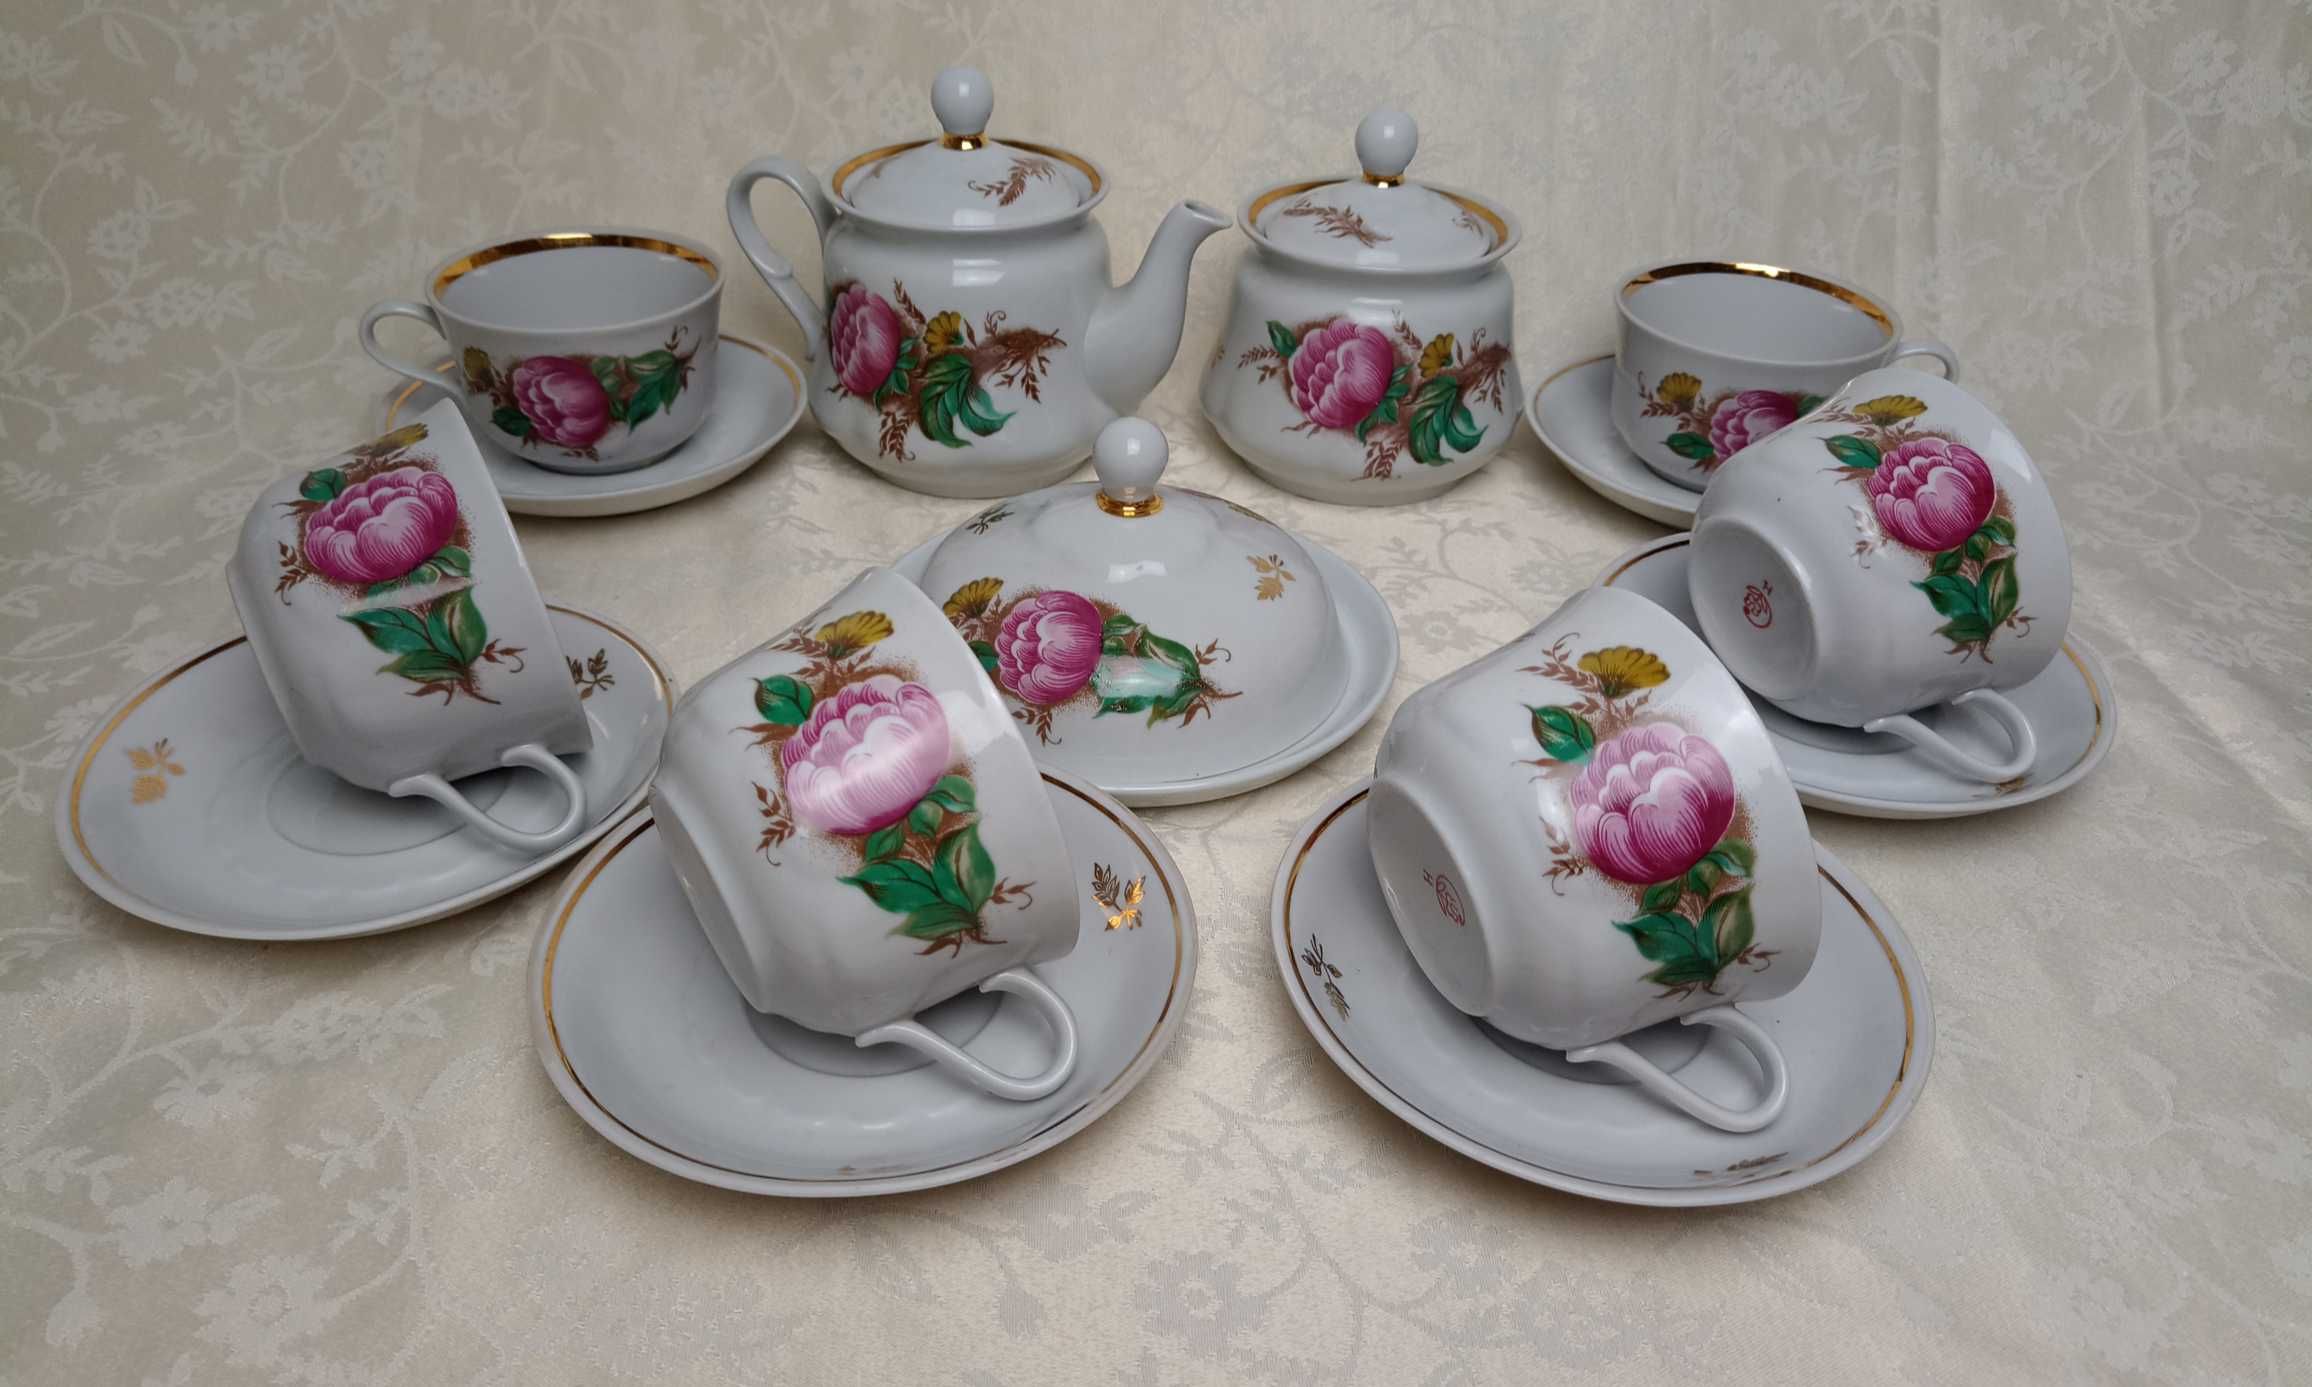 NOWY Porcelanowy SERWIS do herbaty na 6 osób Porcelana ZSRR.Sumy#517